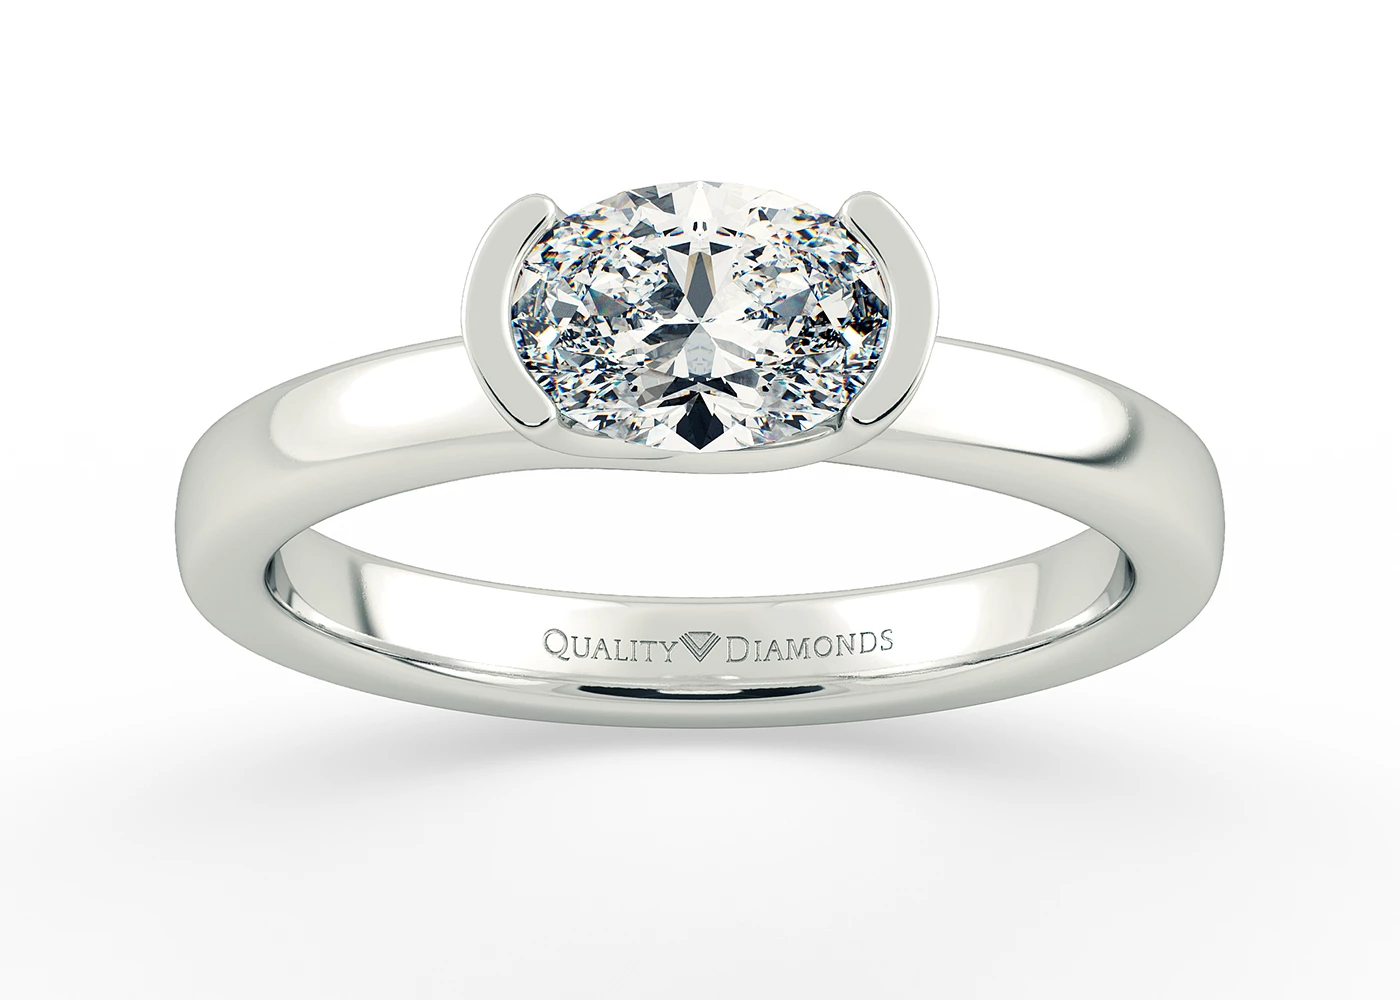 Oval Hanita Diamond Ring in 9K White Gold